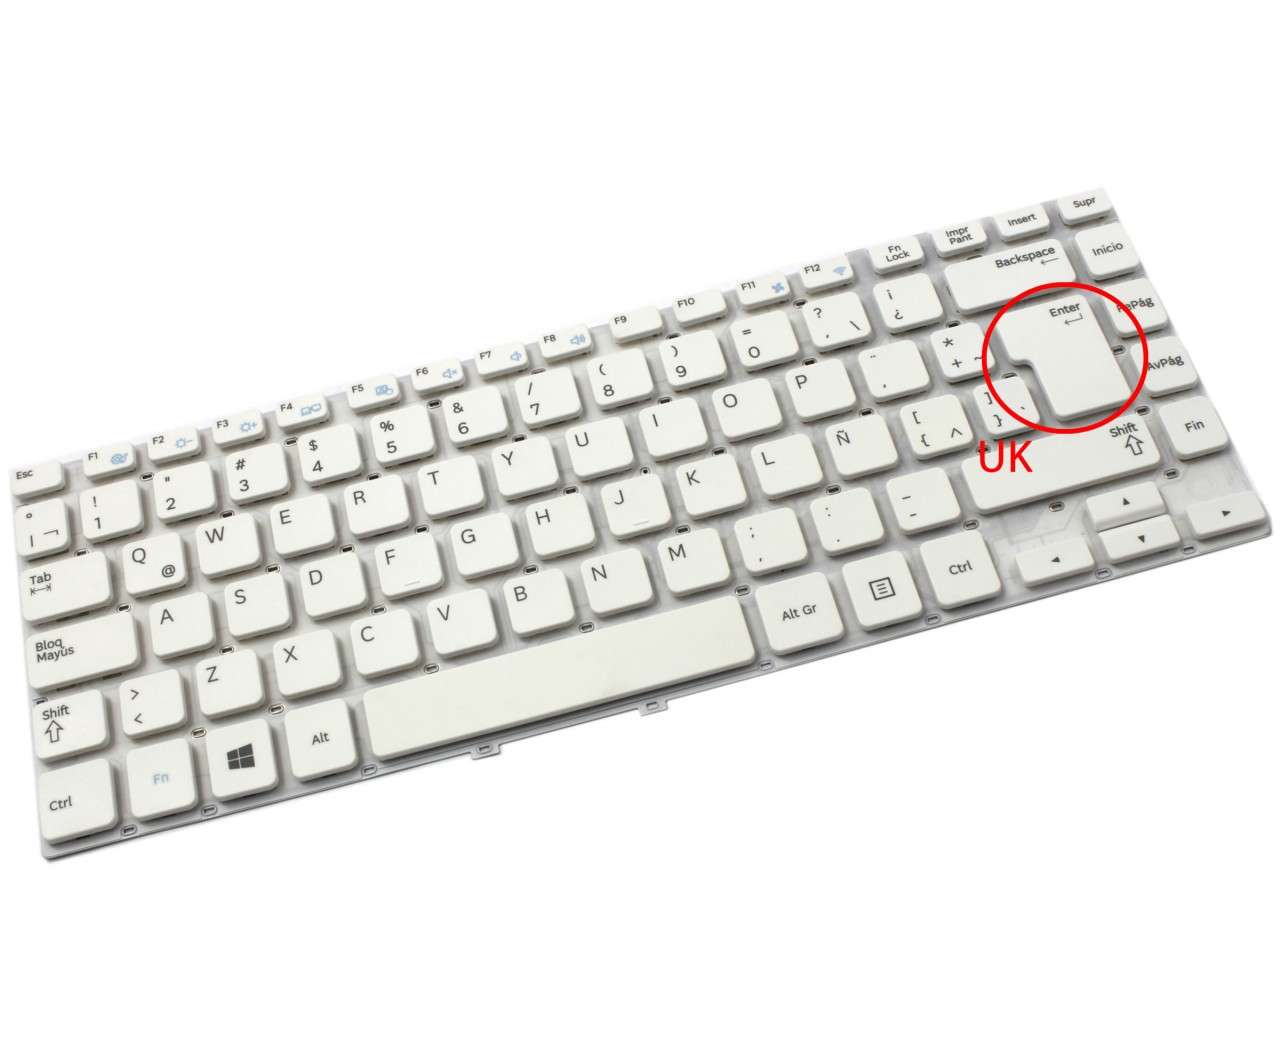 Tastatura alba Samsung NP350V4X layout UK fara rama enter mare alba